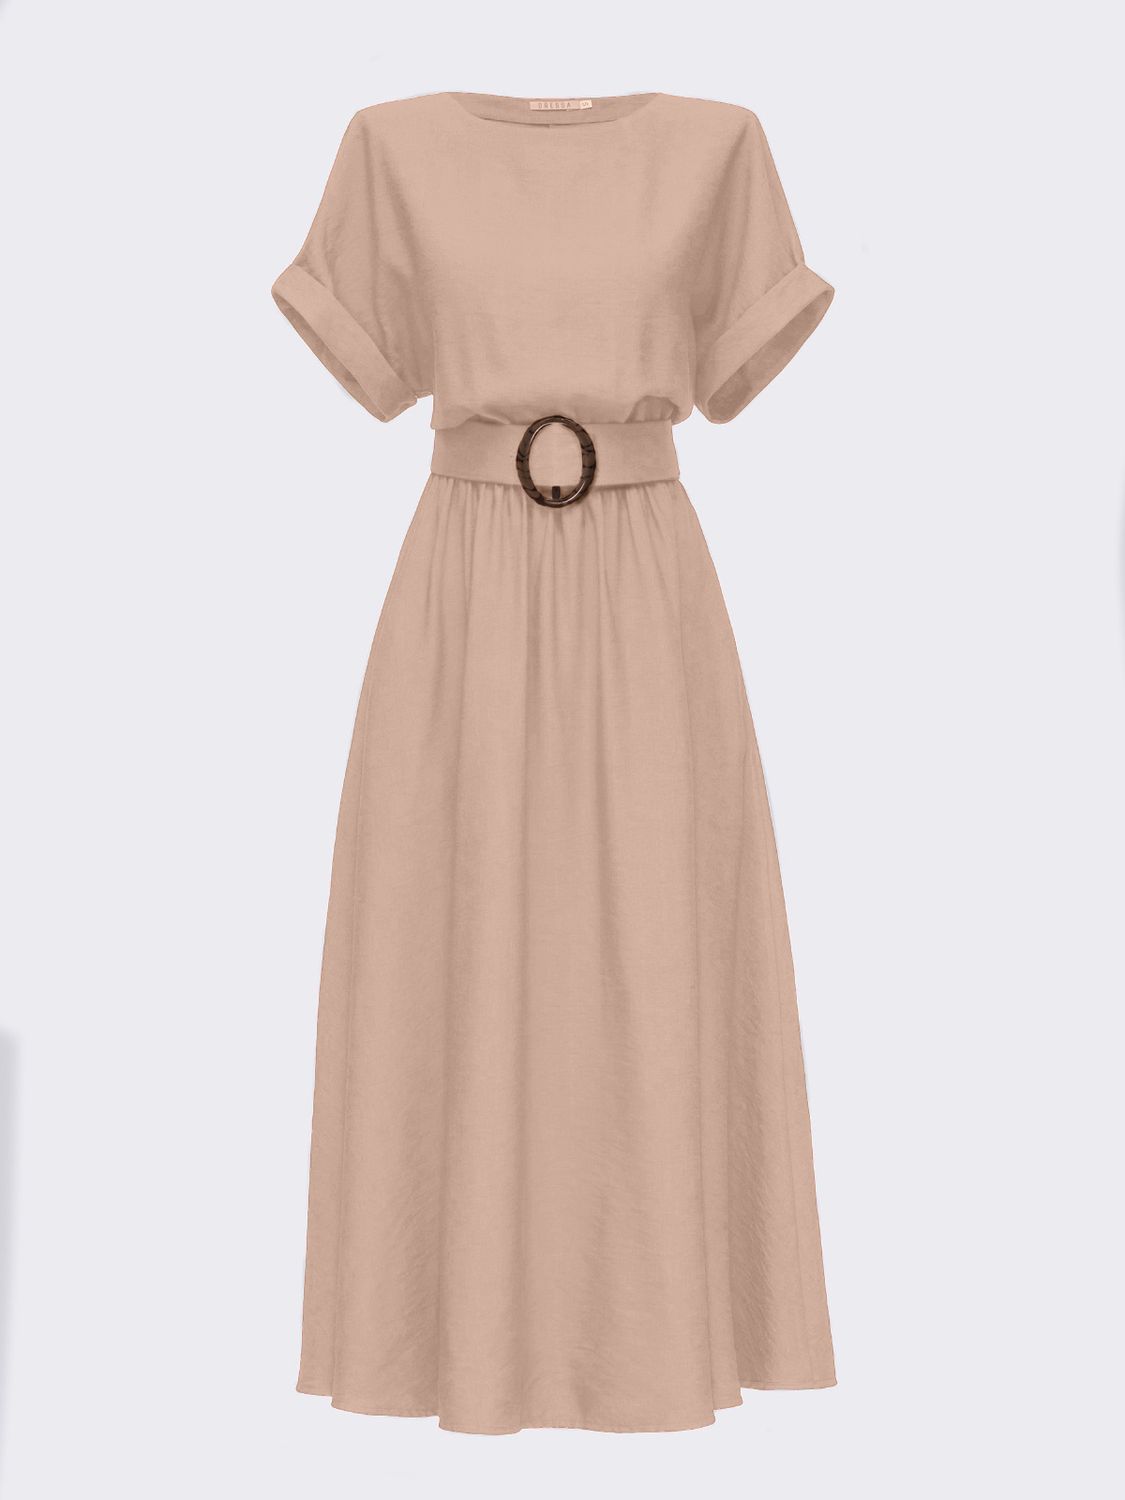 Летнее расклешенное платье из льна бежевого цвета - фото